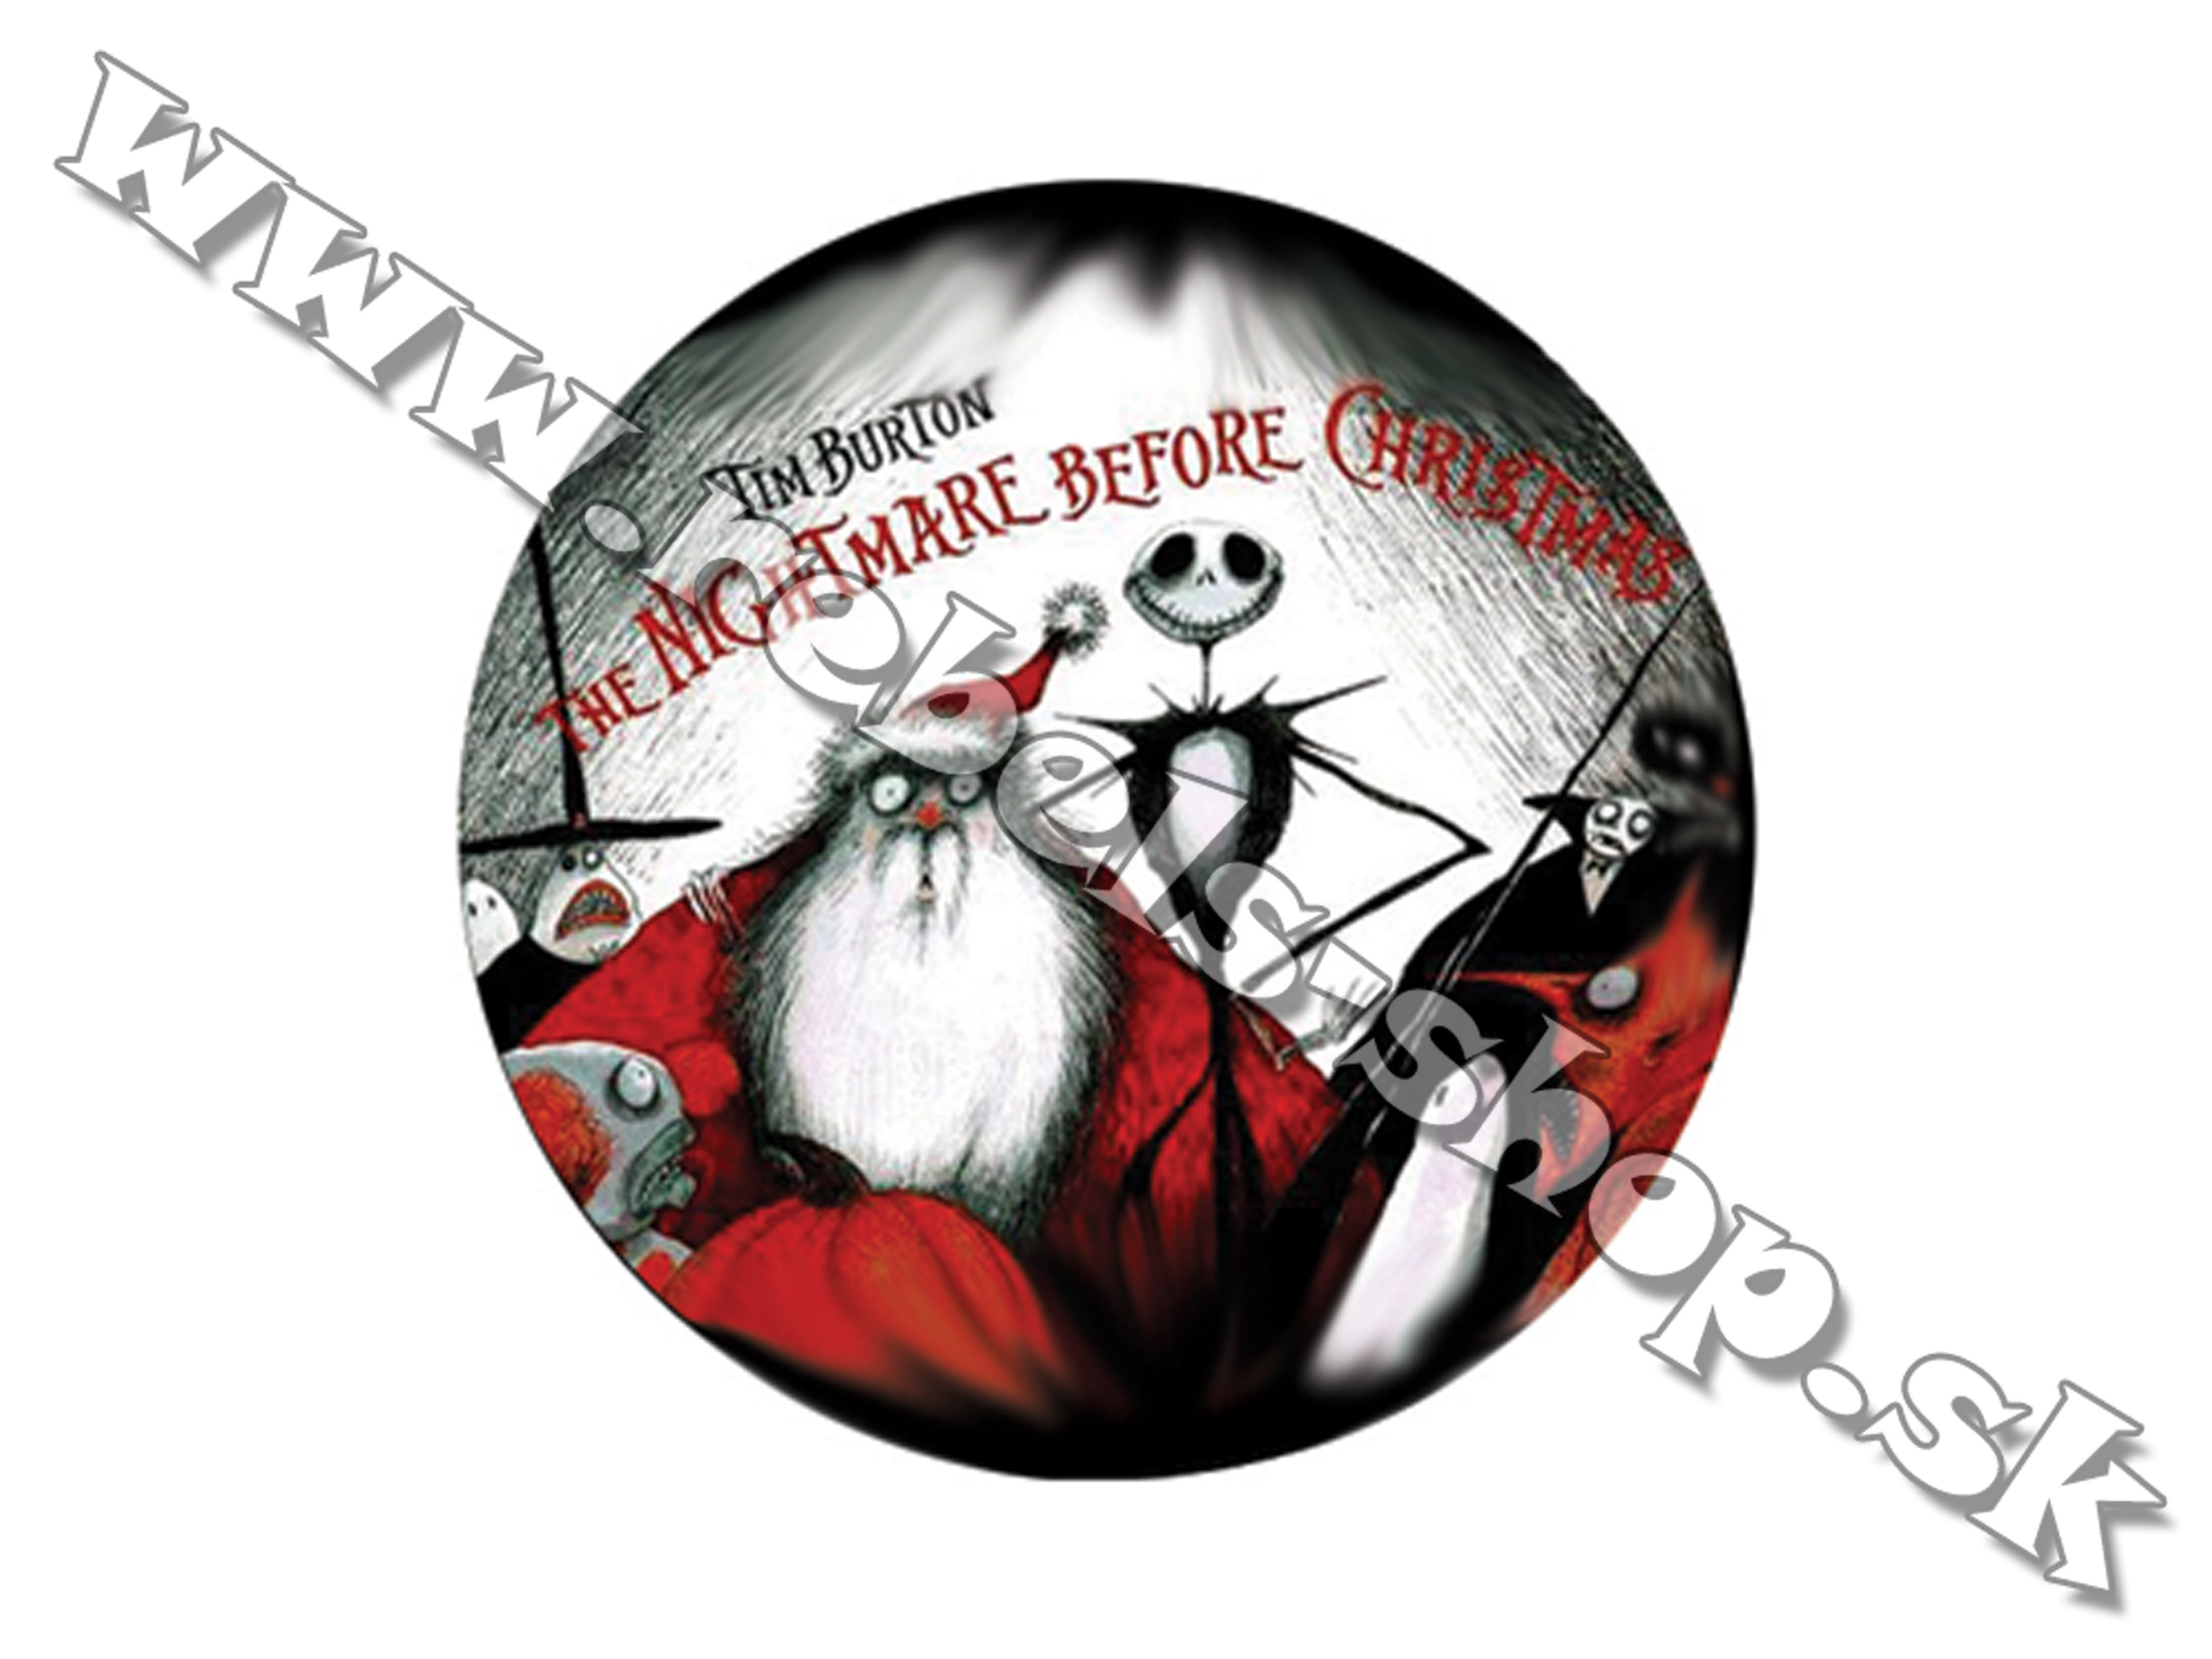 Odznak "Nightmare Before Christmas"